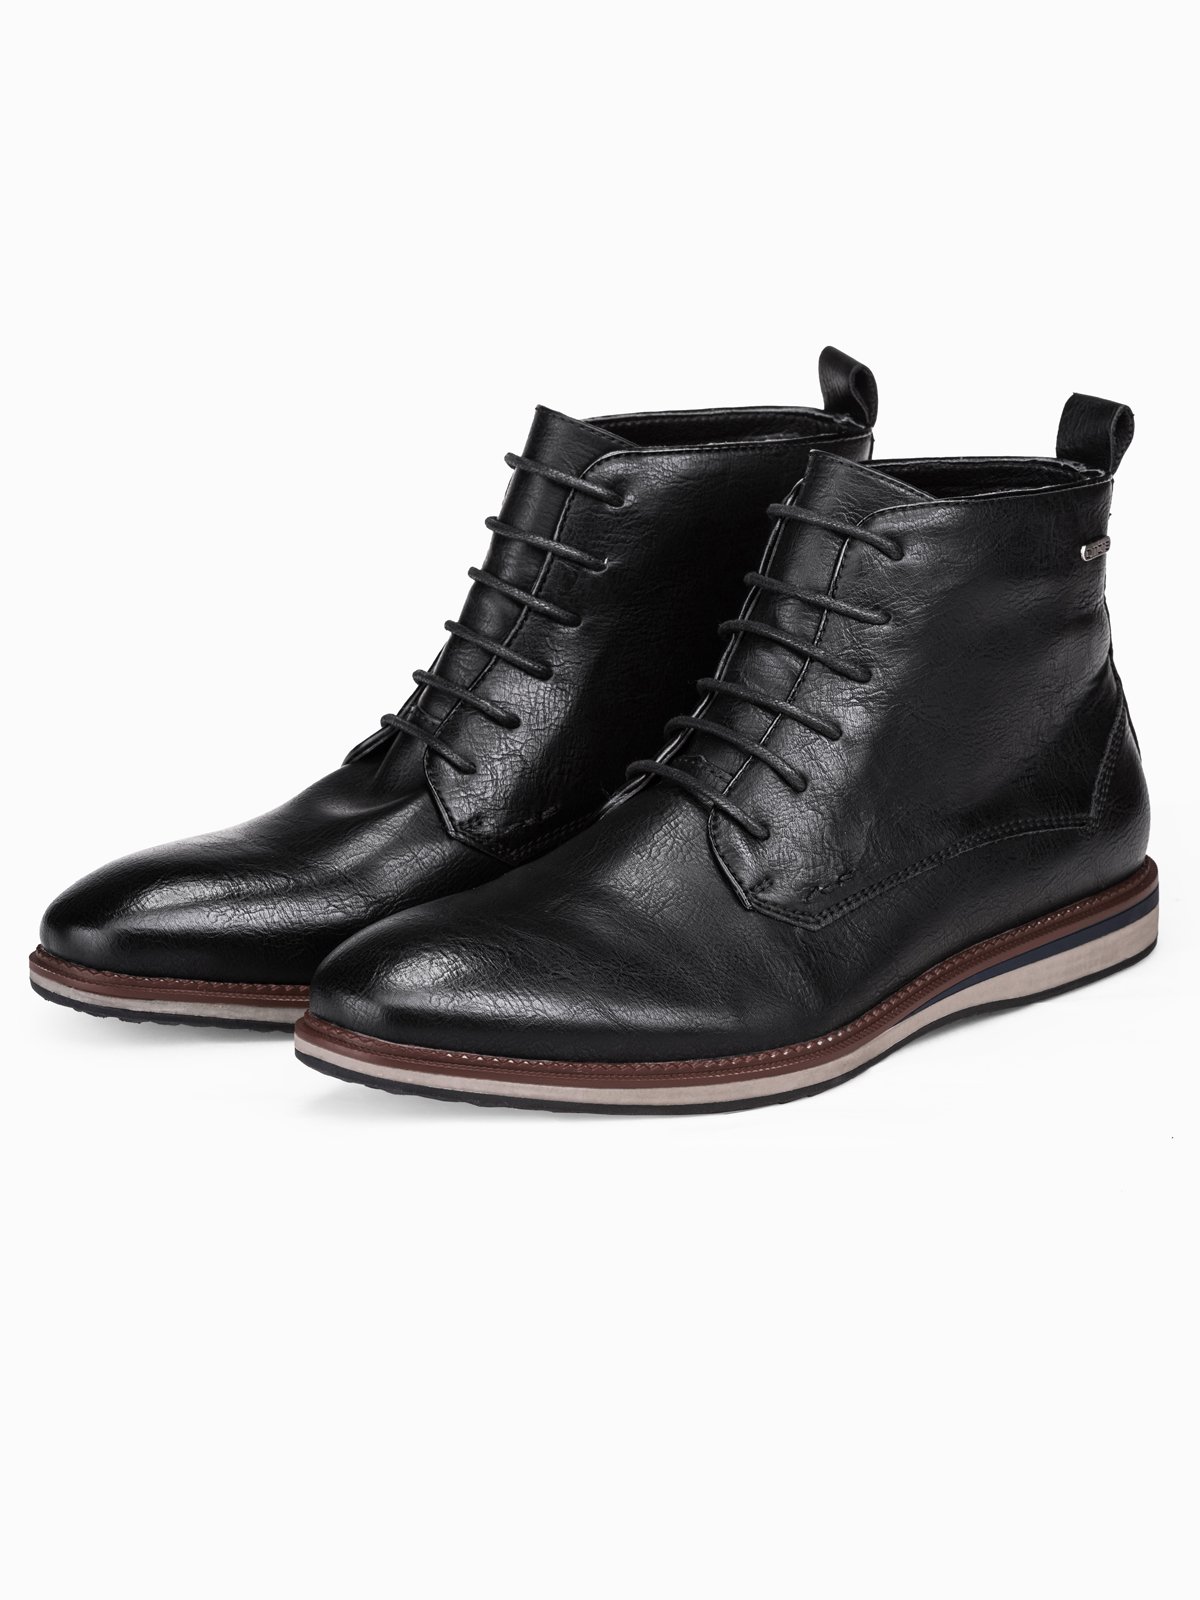 Men's ankle shoes T320 - black | MODONE wholesale - Clothing For Men